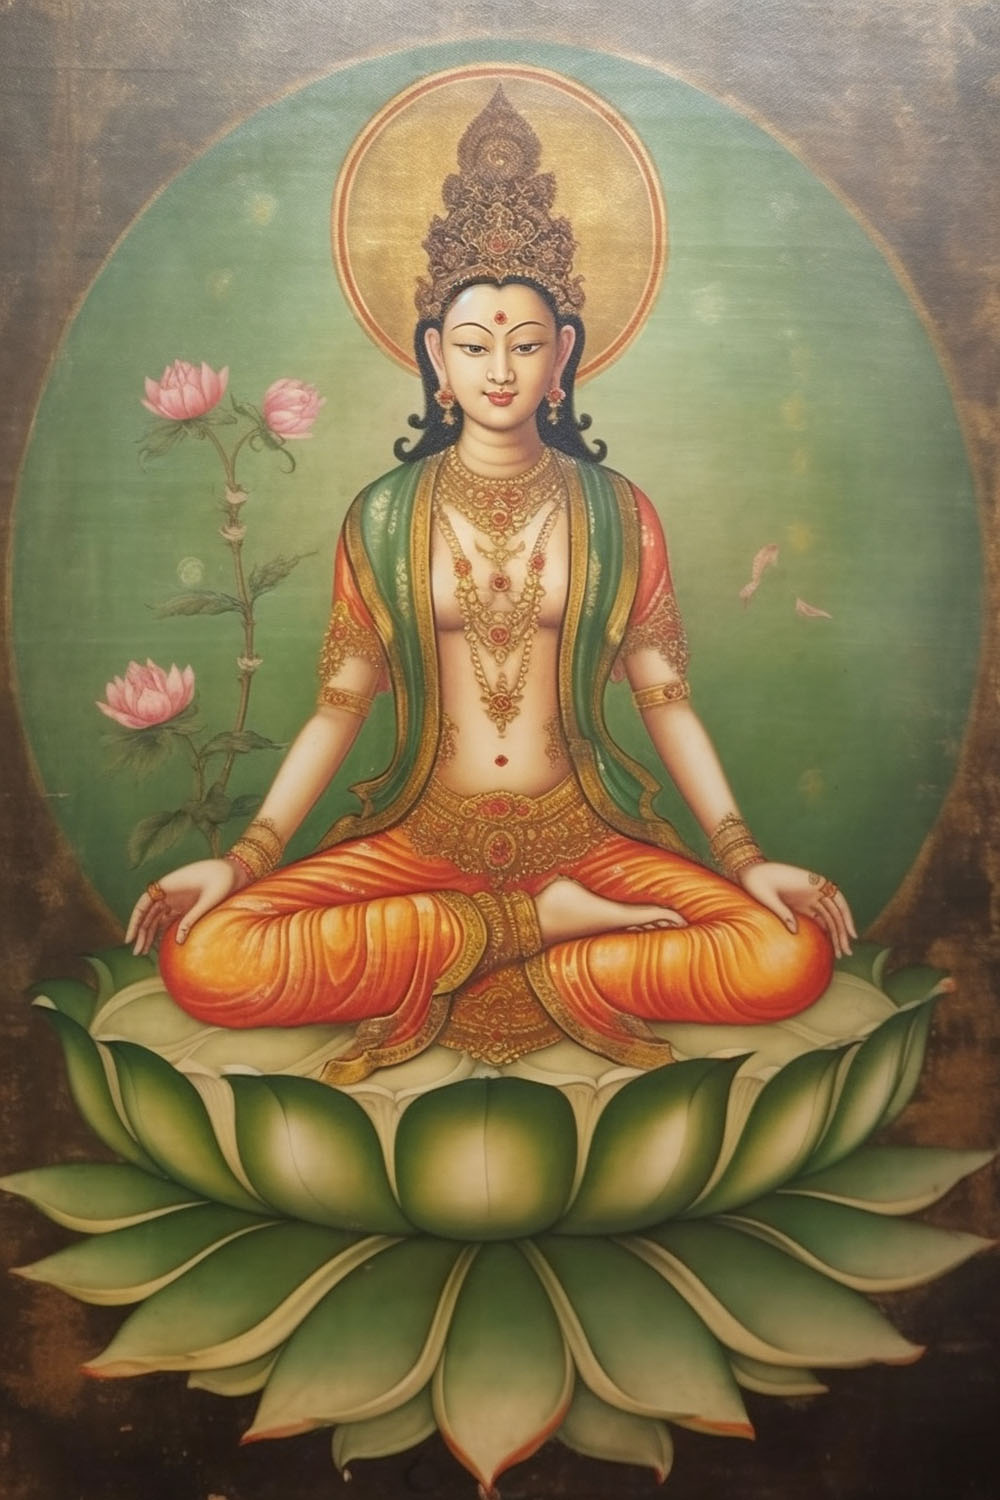 Goddess on Lotus